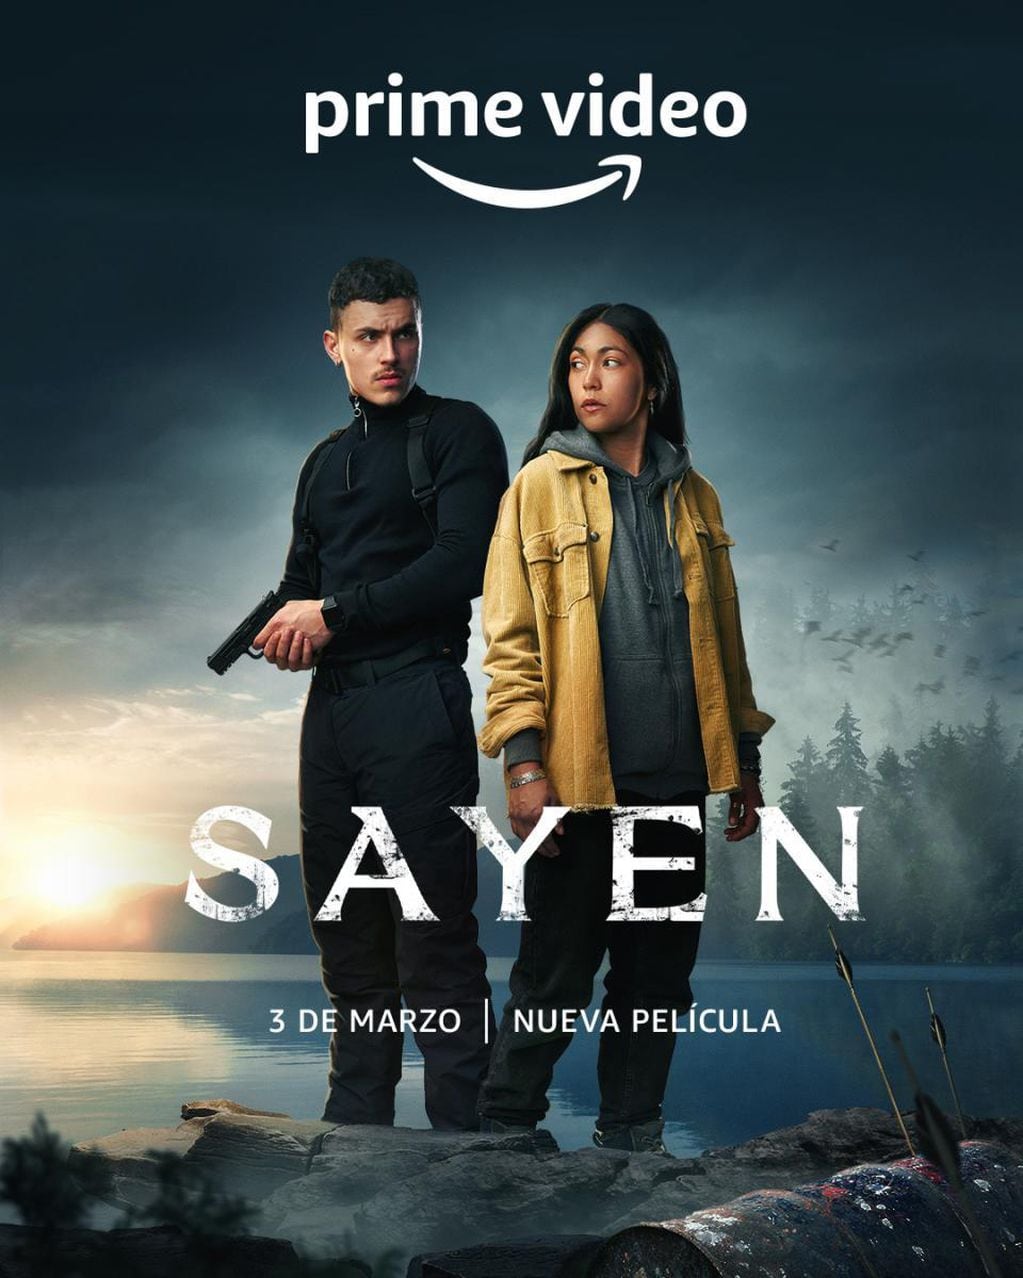 "Sayen", película recomendada en Prime Video.